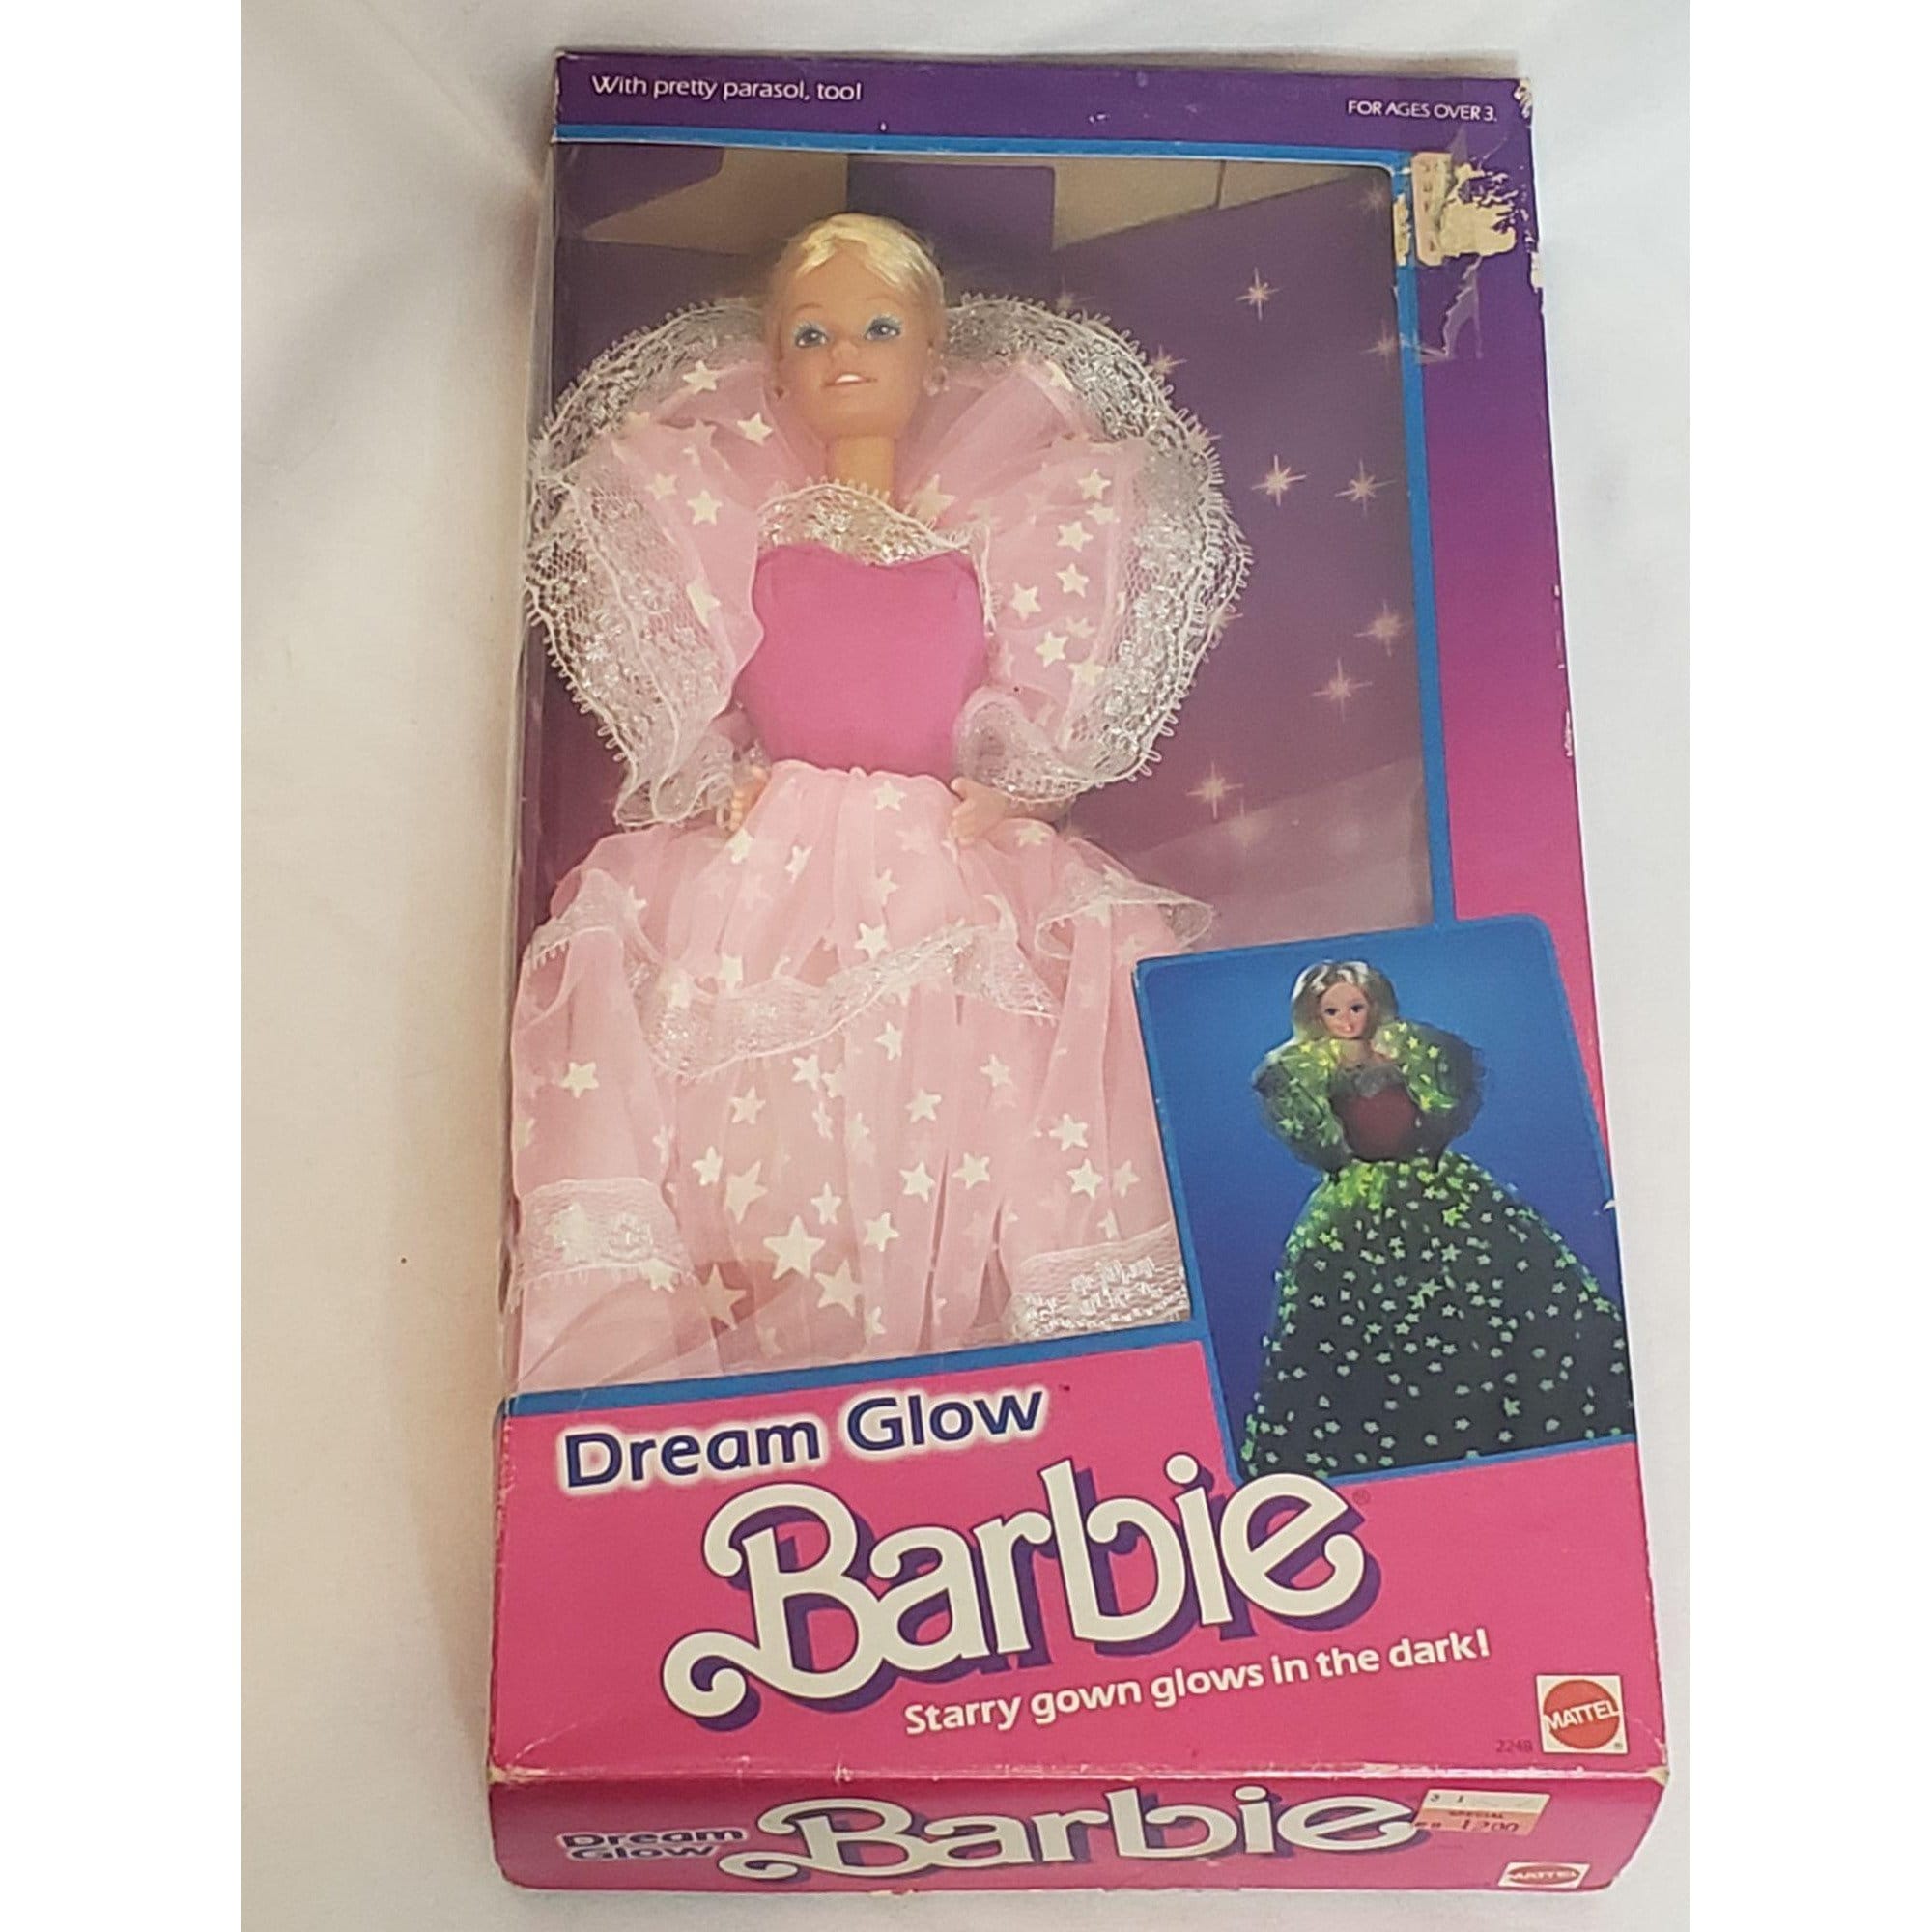 Über Lästig Diskretion barbie dream glow 1985 Vergrößerung Cafe Braut